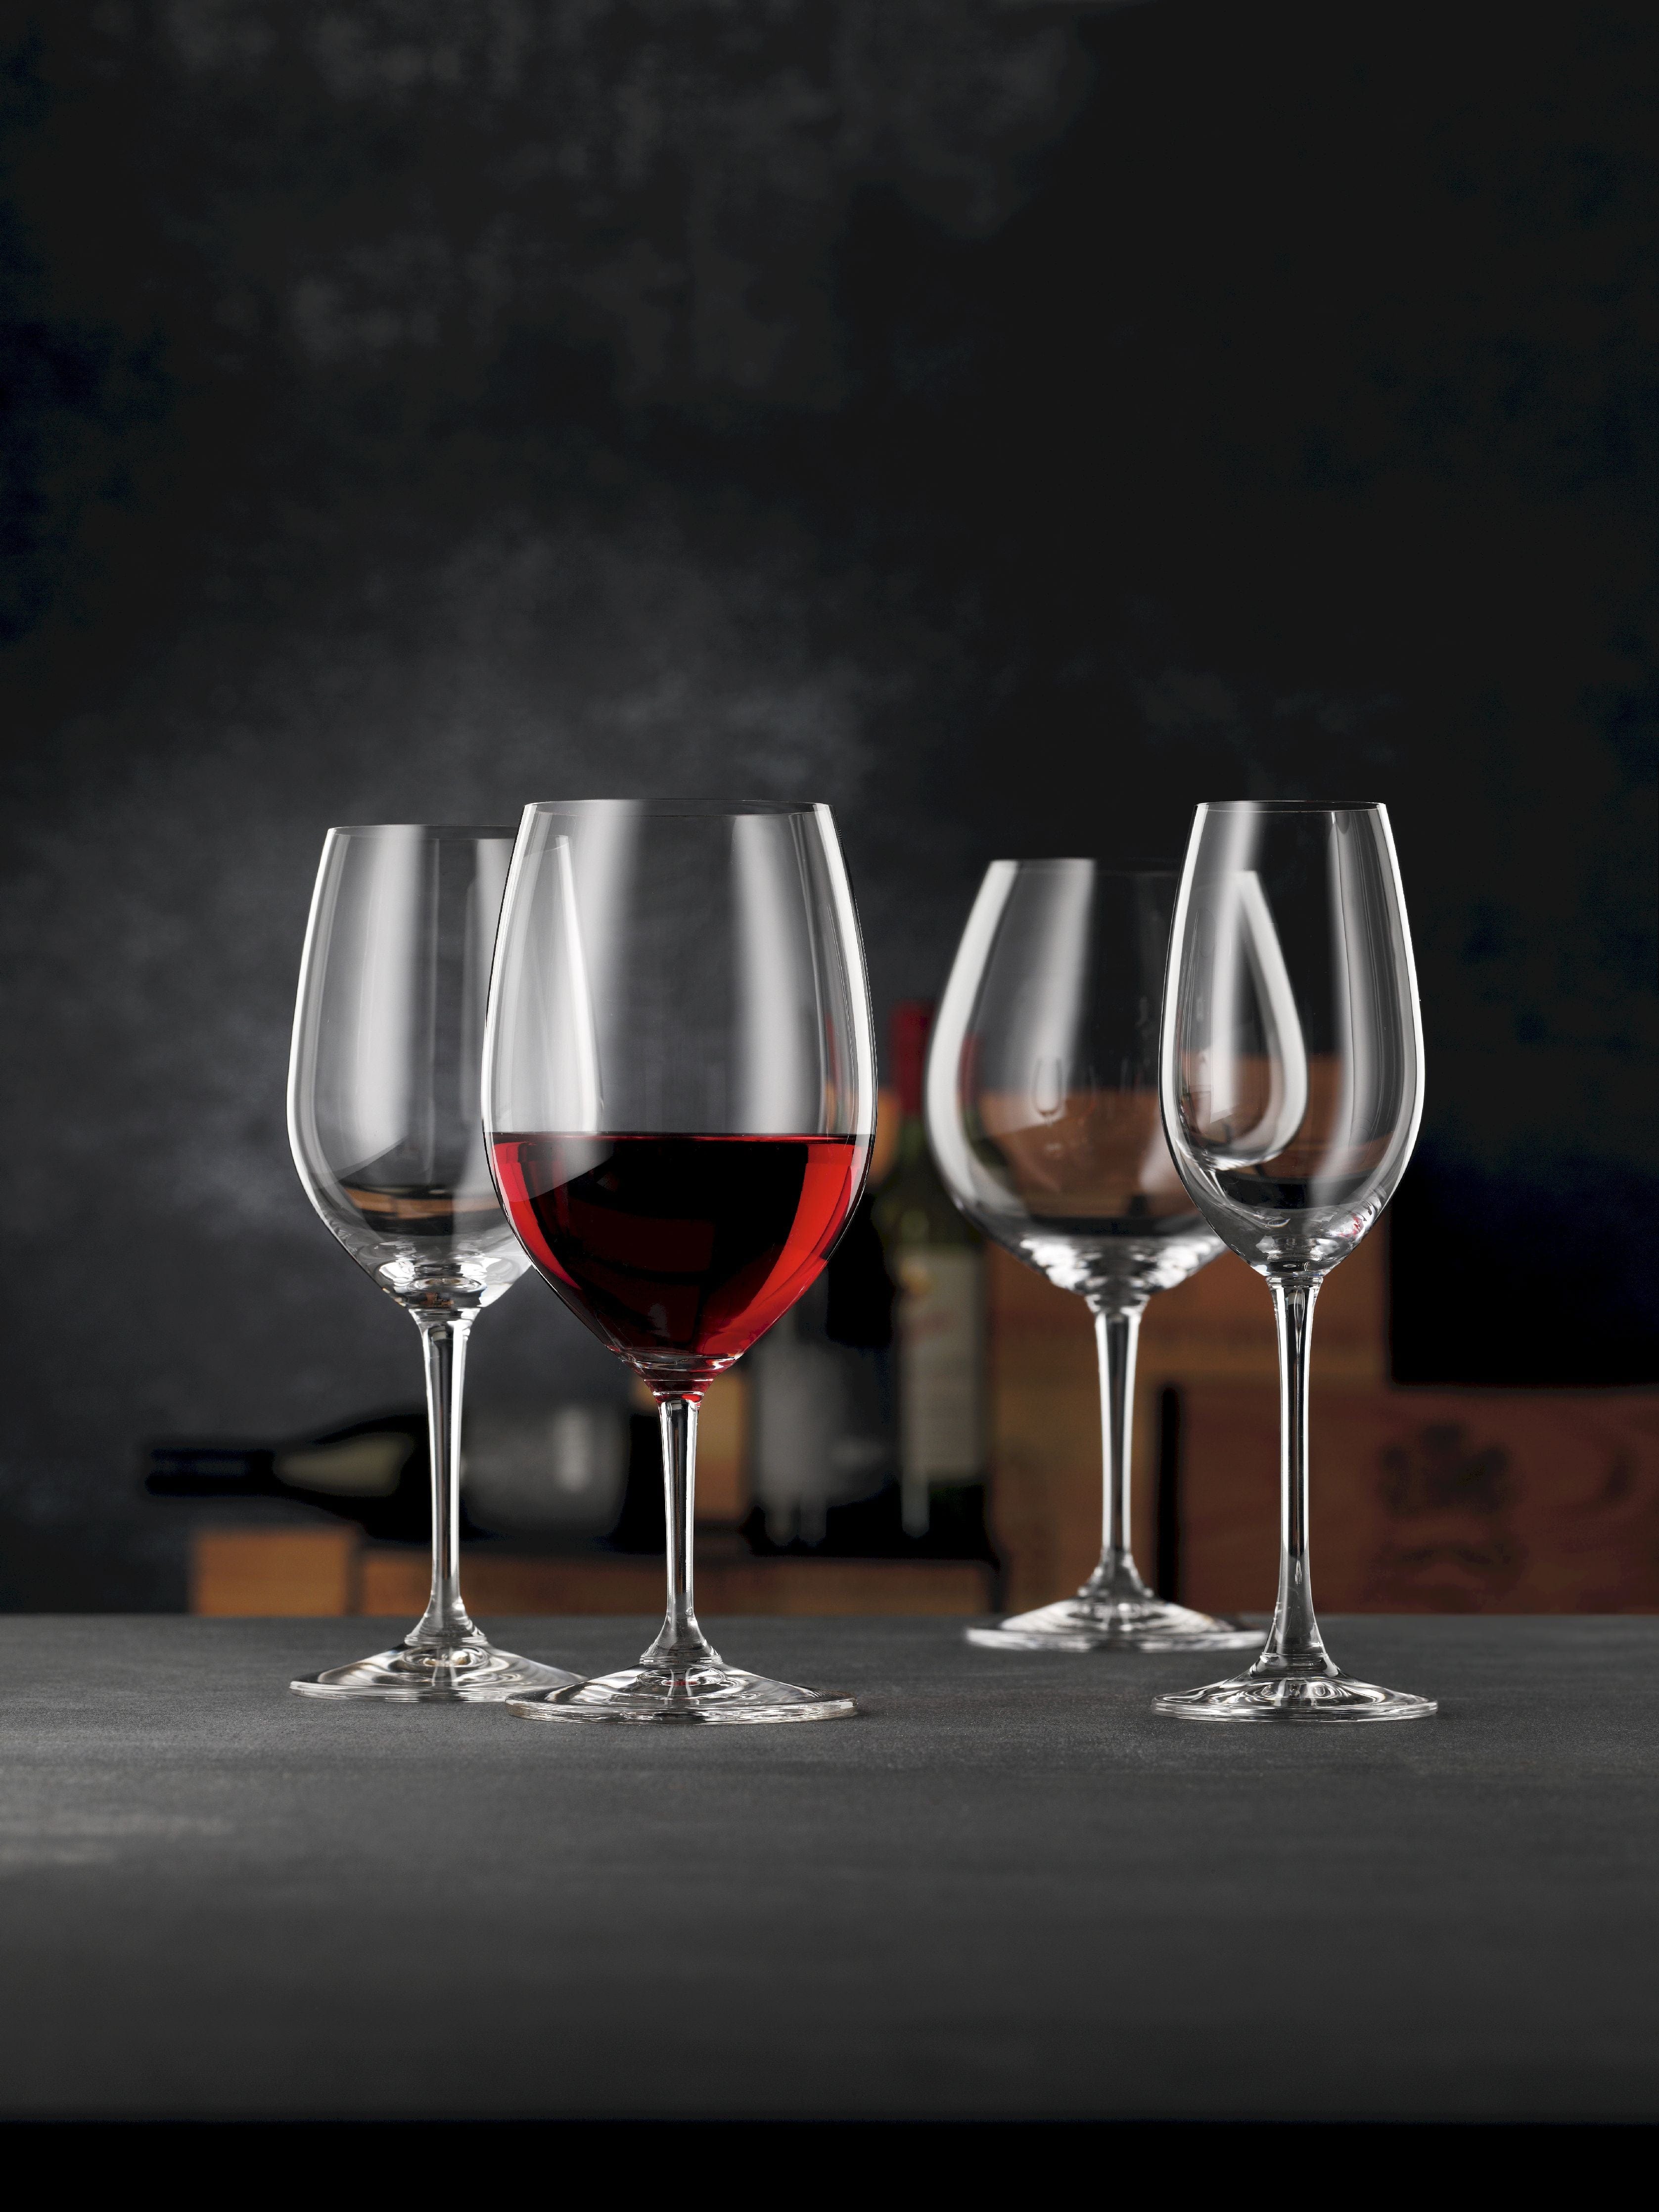 Nachtmann Vi Vino White Wine Glass 370 ml, set di 4